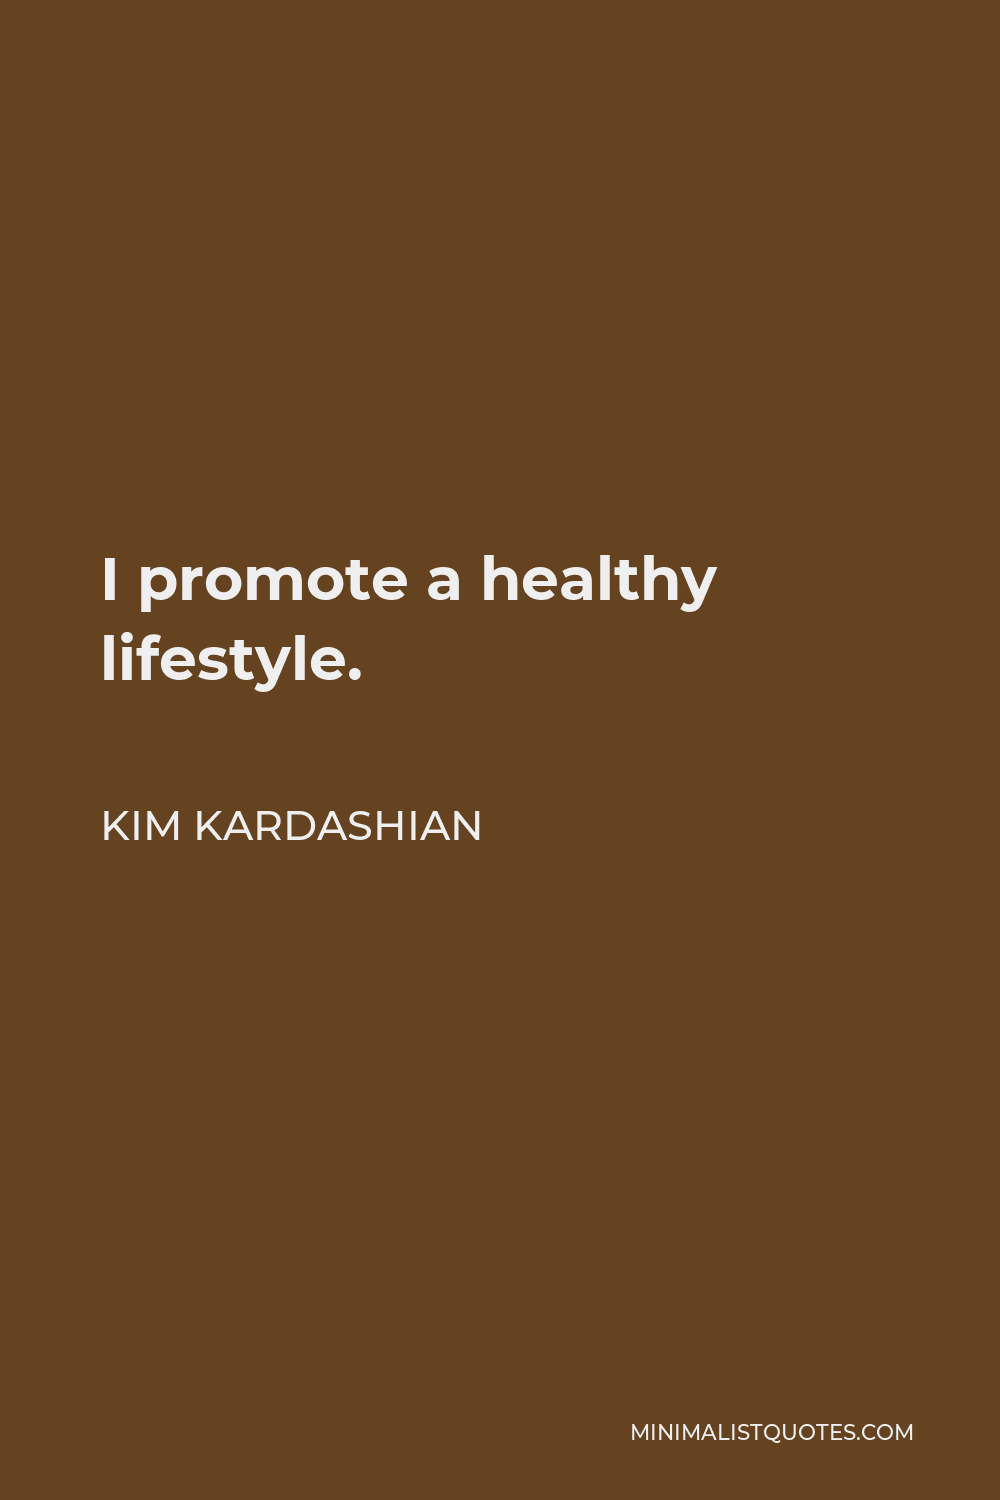 Kim Kardashian Quote - I promote a healthy lifestyle.